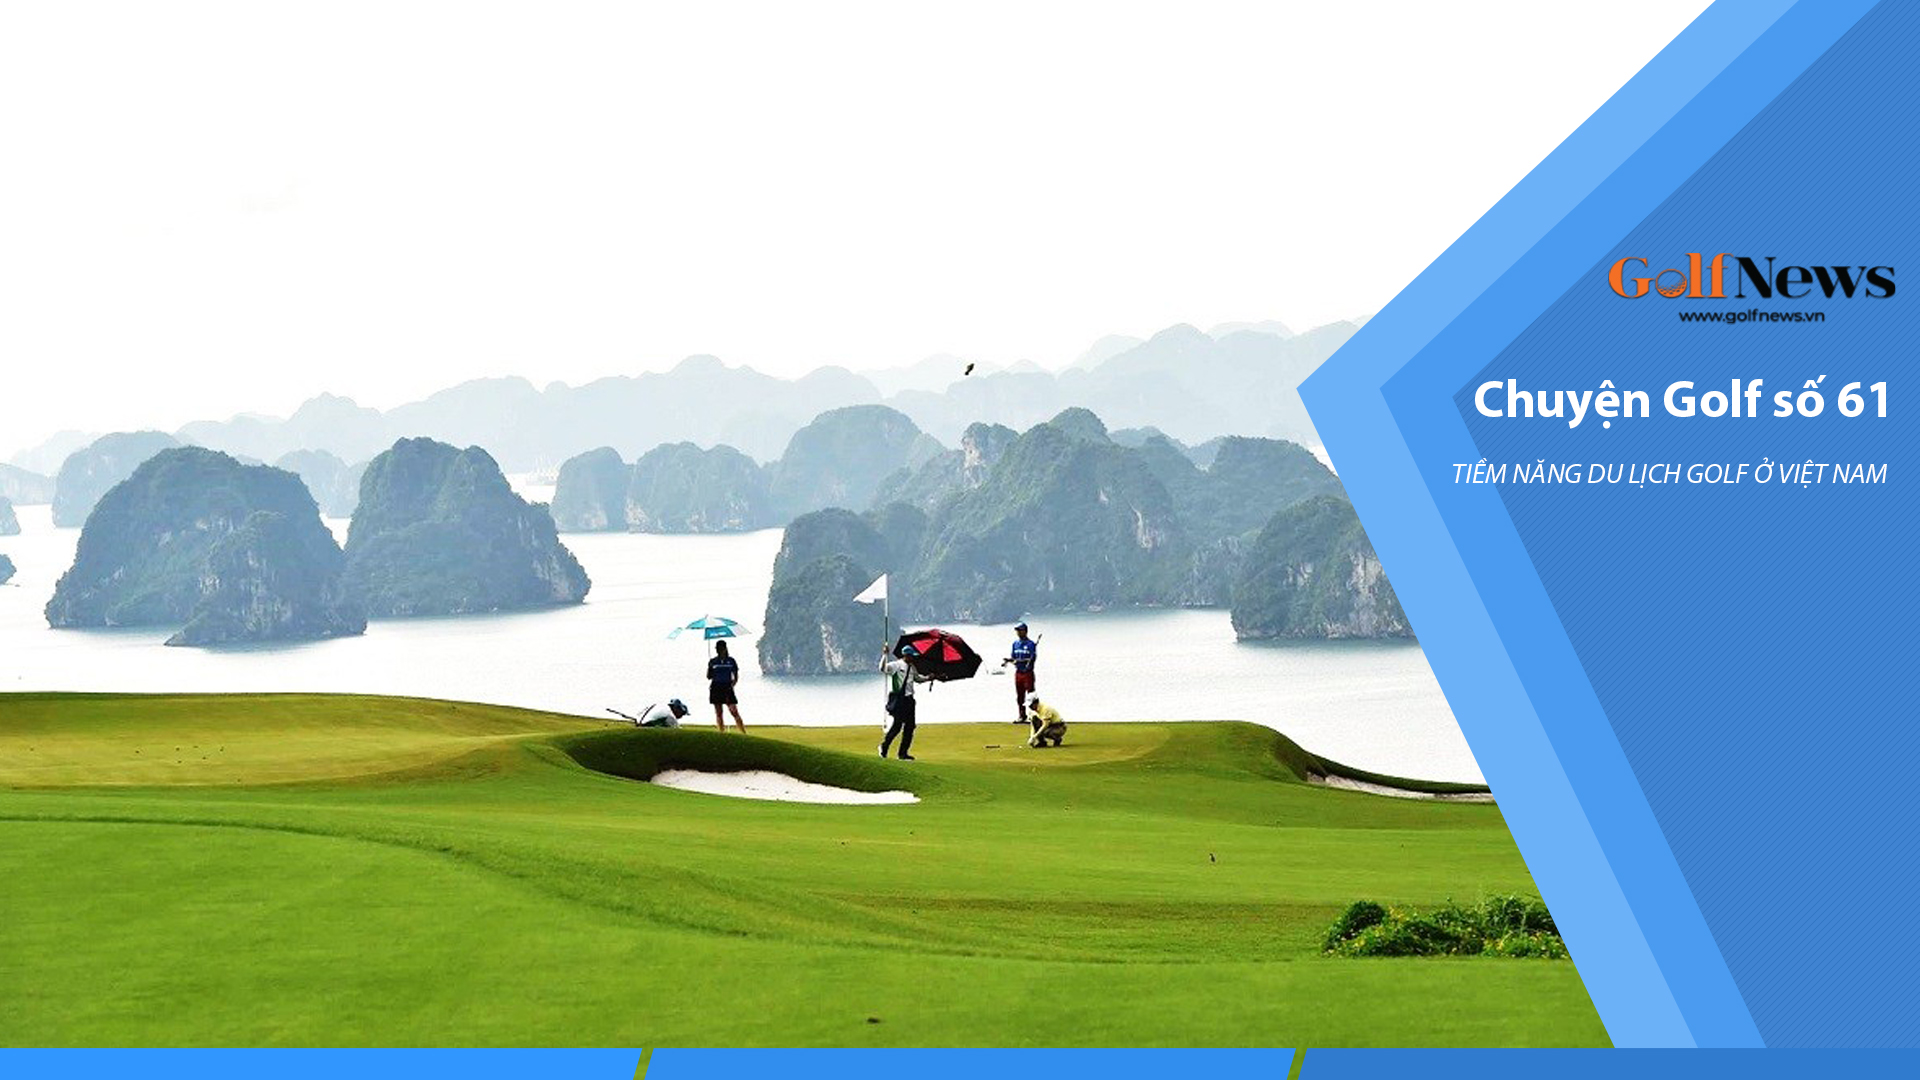 Chuyện golf: Phát triển du lịch golf ở Việt Nam